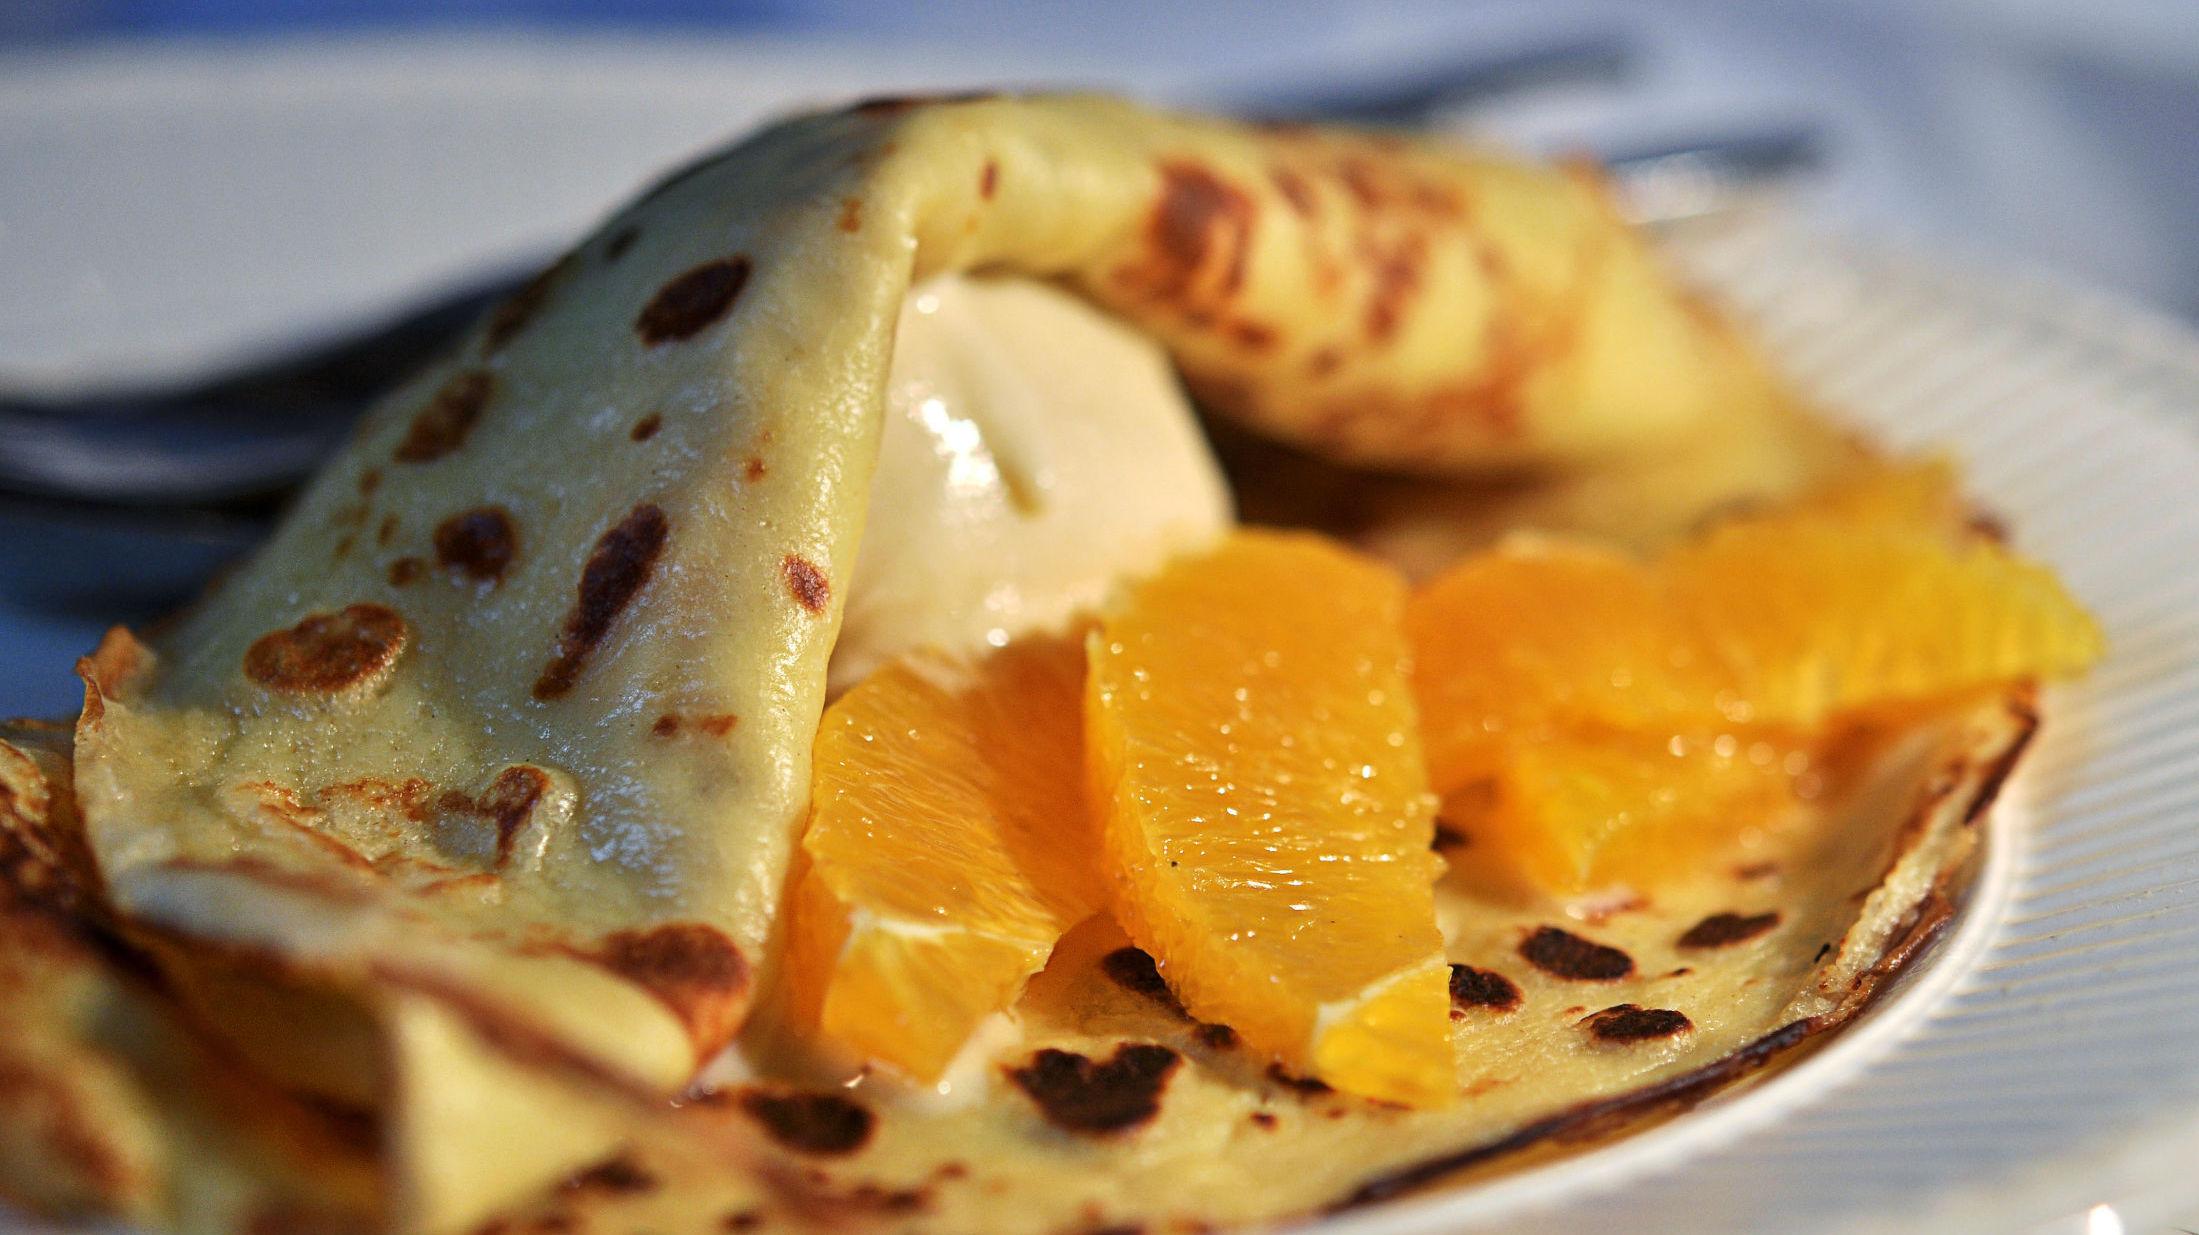 SØTT OG SYRLIG: Crepes med vaniljeis og appelsinbåter balanserer smakene helt perfekt. Foto: Annica Været